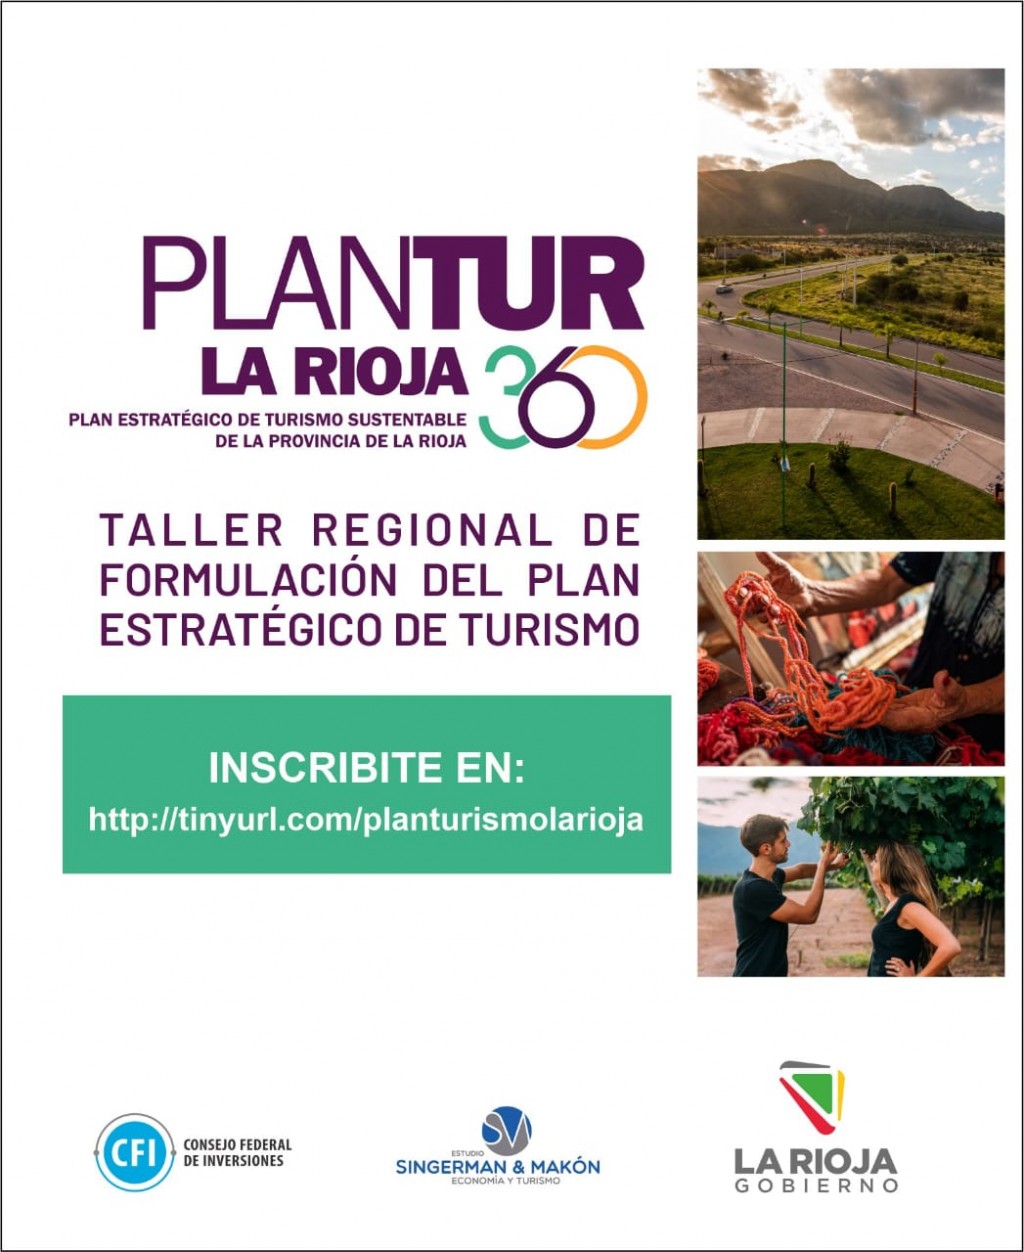 Nueva etapa de PLANTuR 360: Iniciaron los talleres regionales para la formulación de estrategias del Plan Estratégico de Turismo